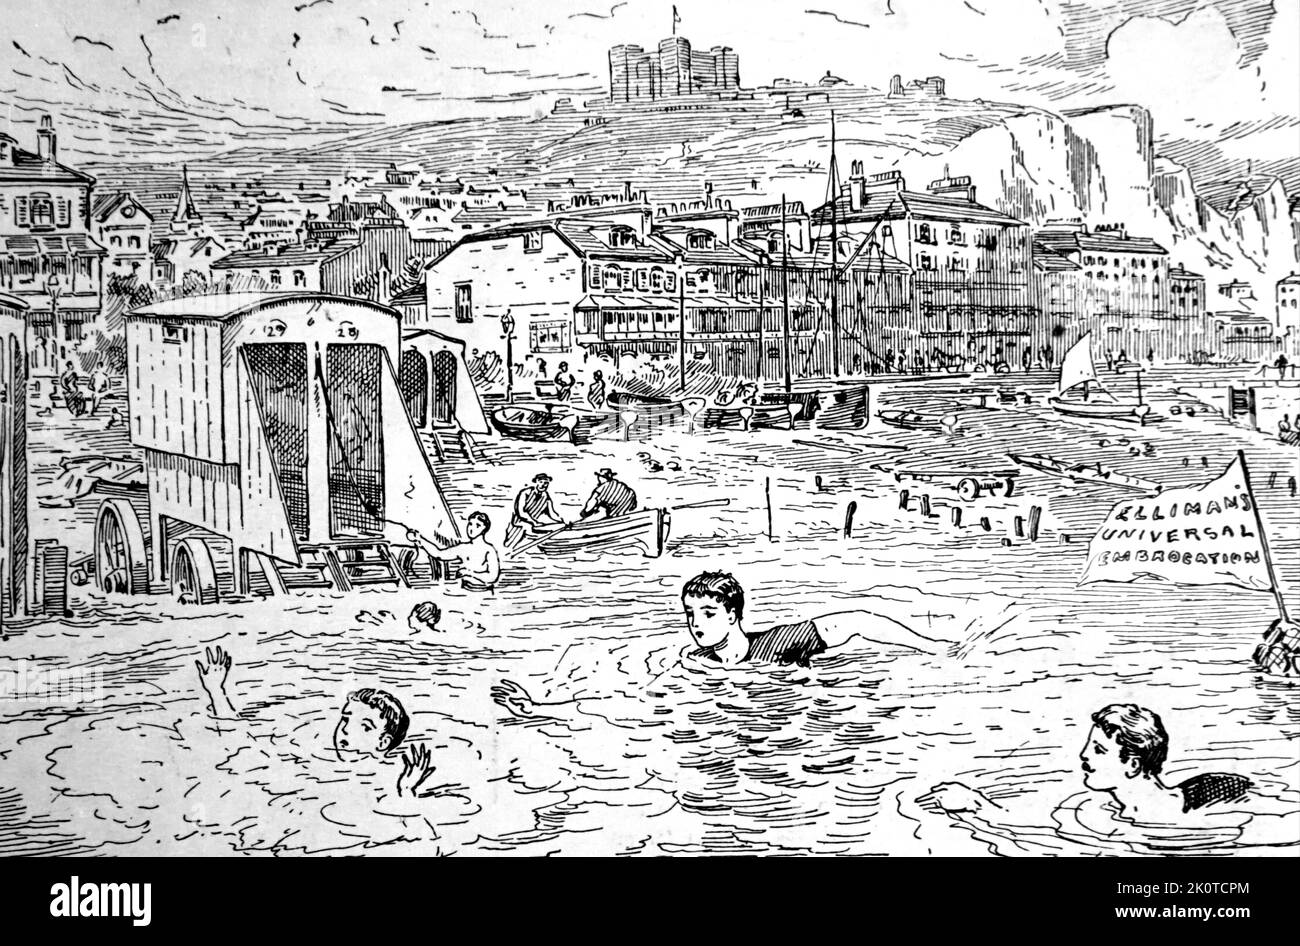 1892; Darstellung einer geschäftigen Szene am Meer mit Badegästen, Schwimmern und Urlaubern in einem englischen Küstenort Stockfoto